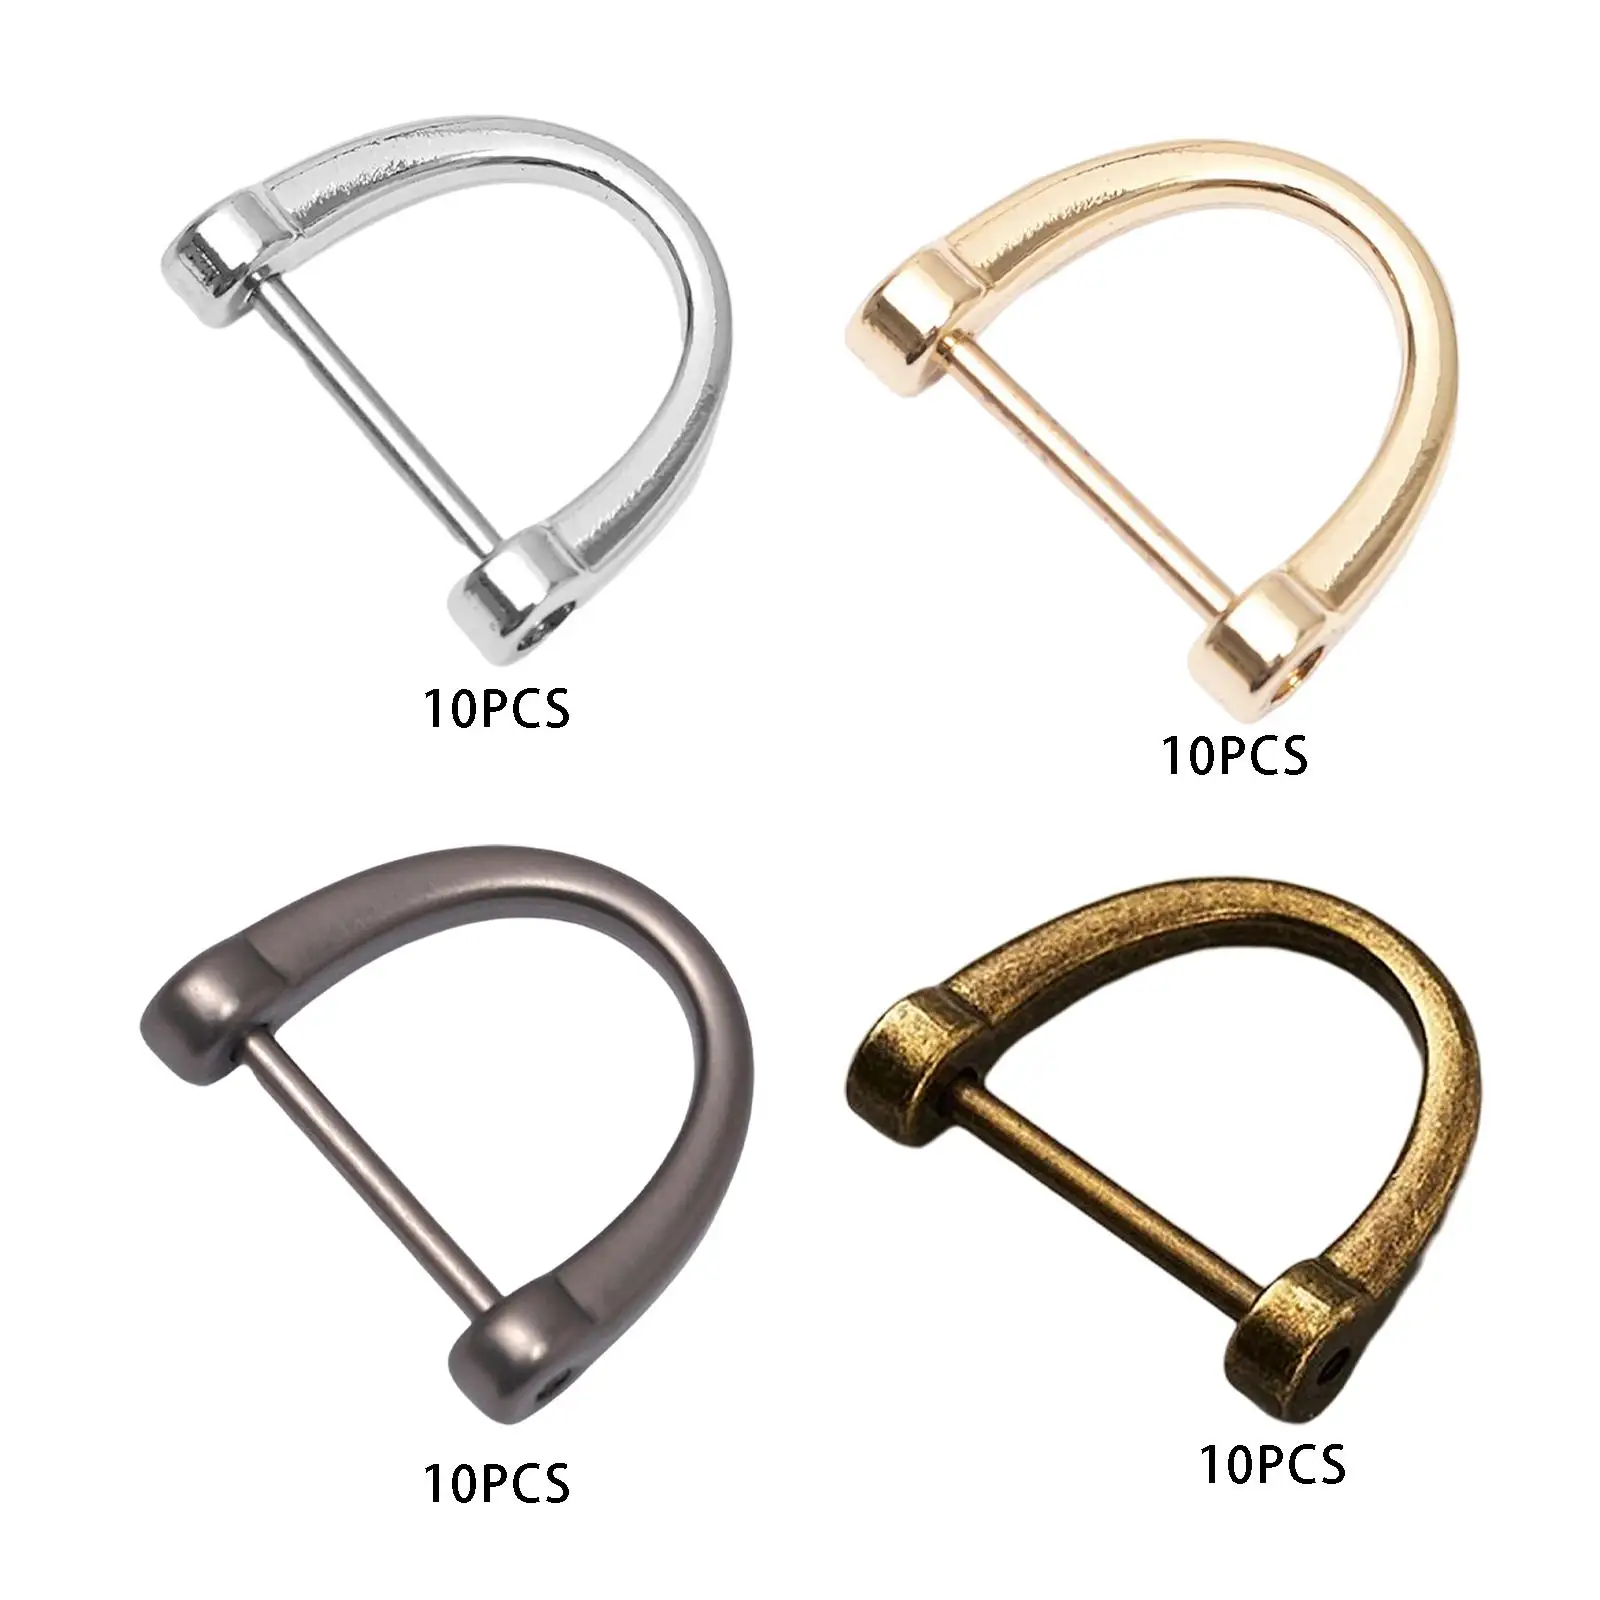 10Pcs Buckles D Rings Hoop Locking Fasteners D Rings for DIY Leather